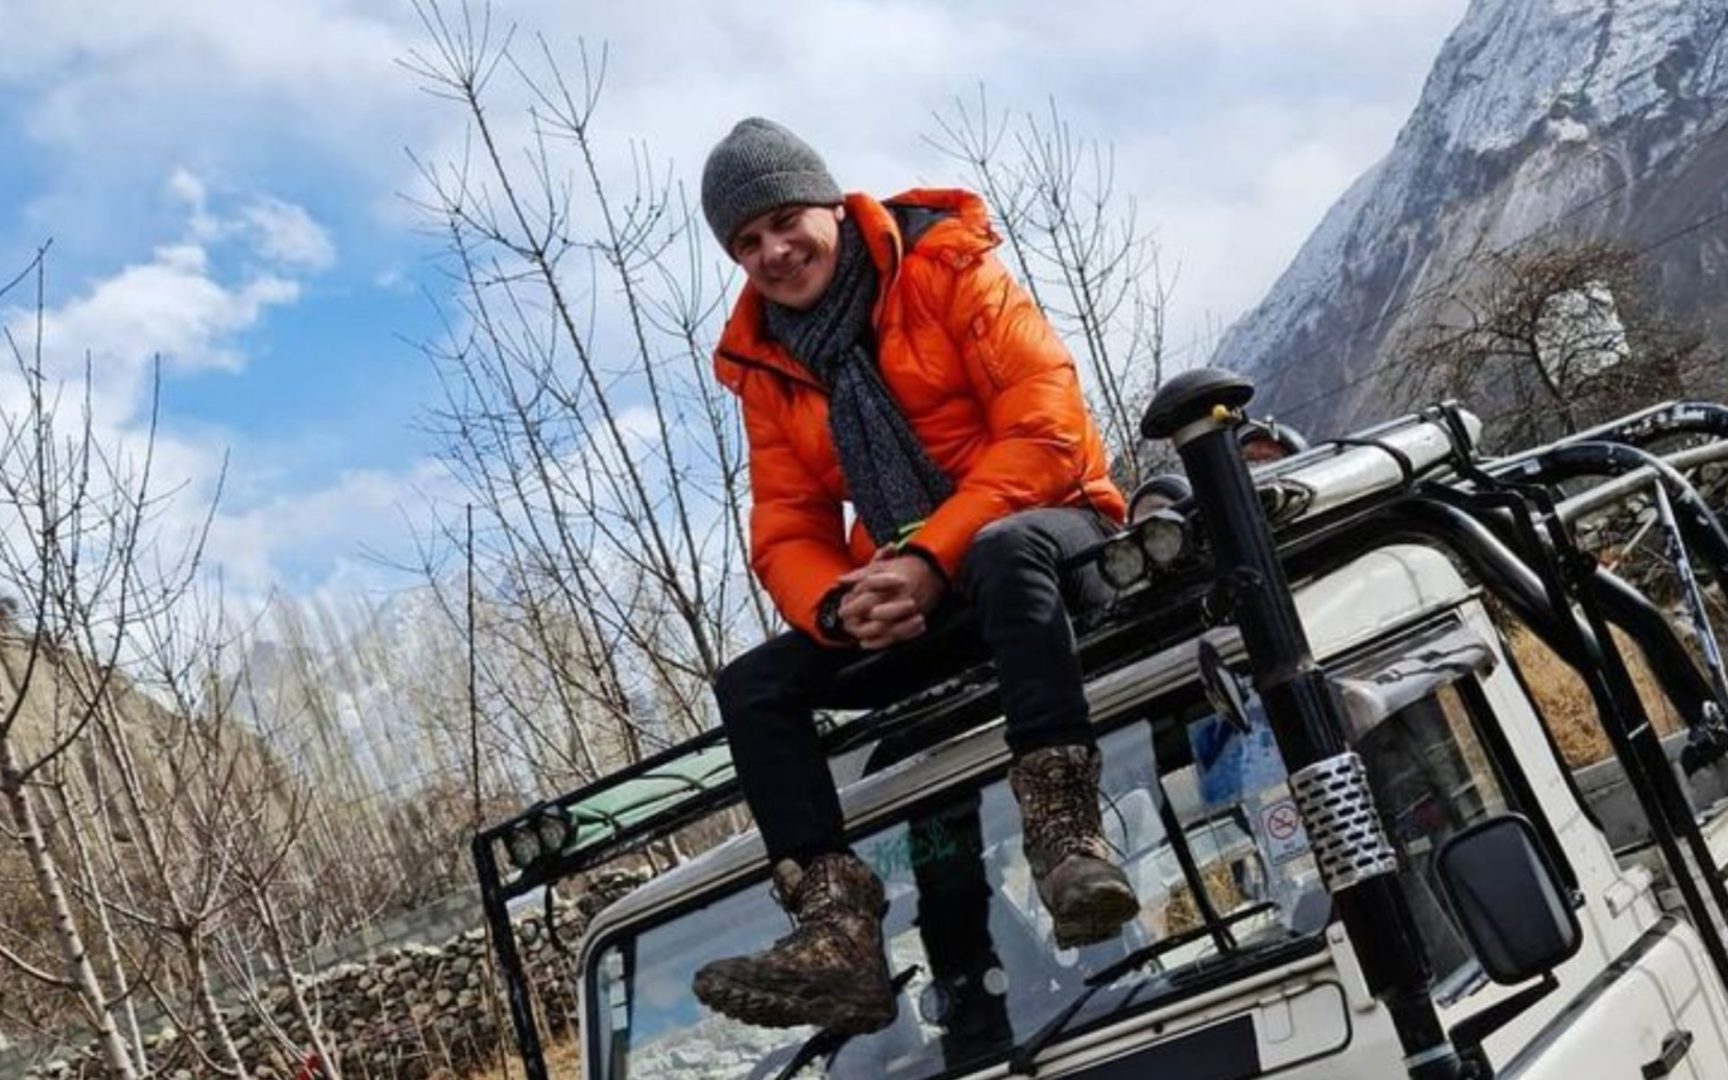 Ехал “верхом” на внедорожнике: Дмитрий Комаров удивил экспедицией в Пакистане